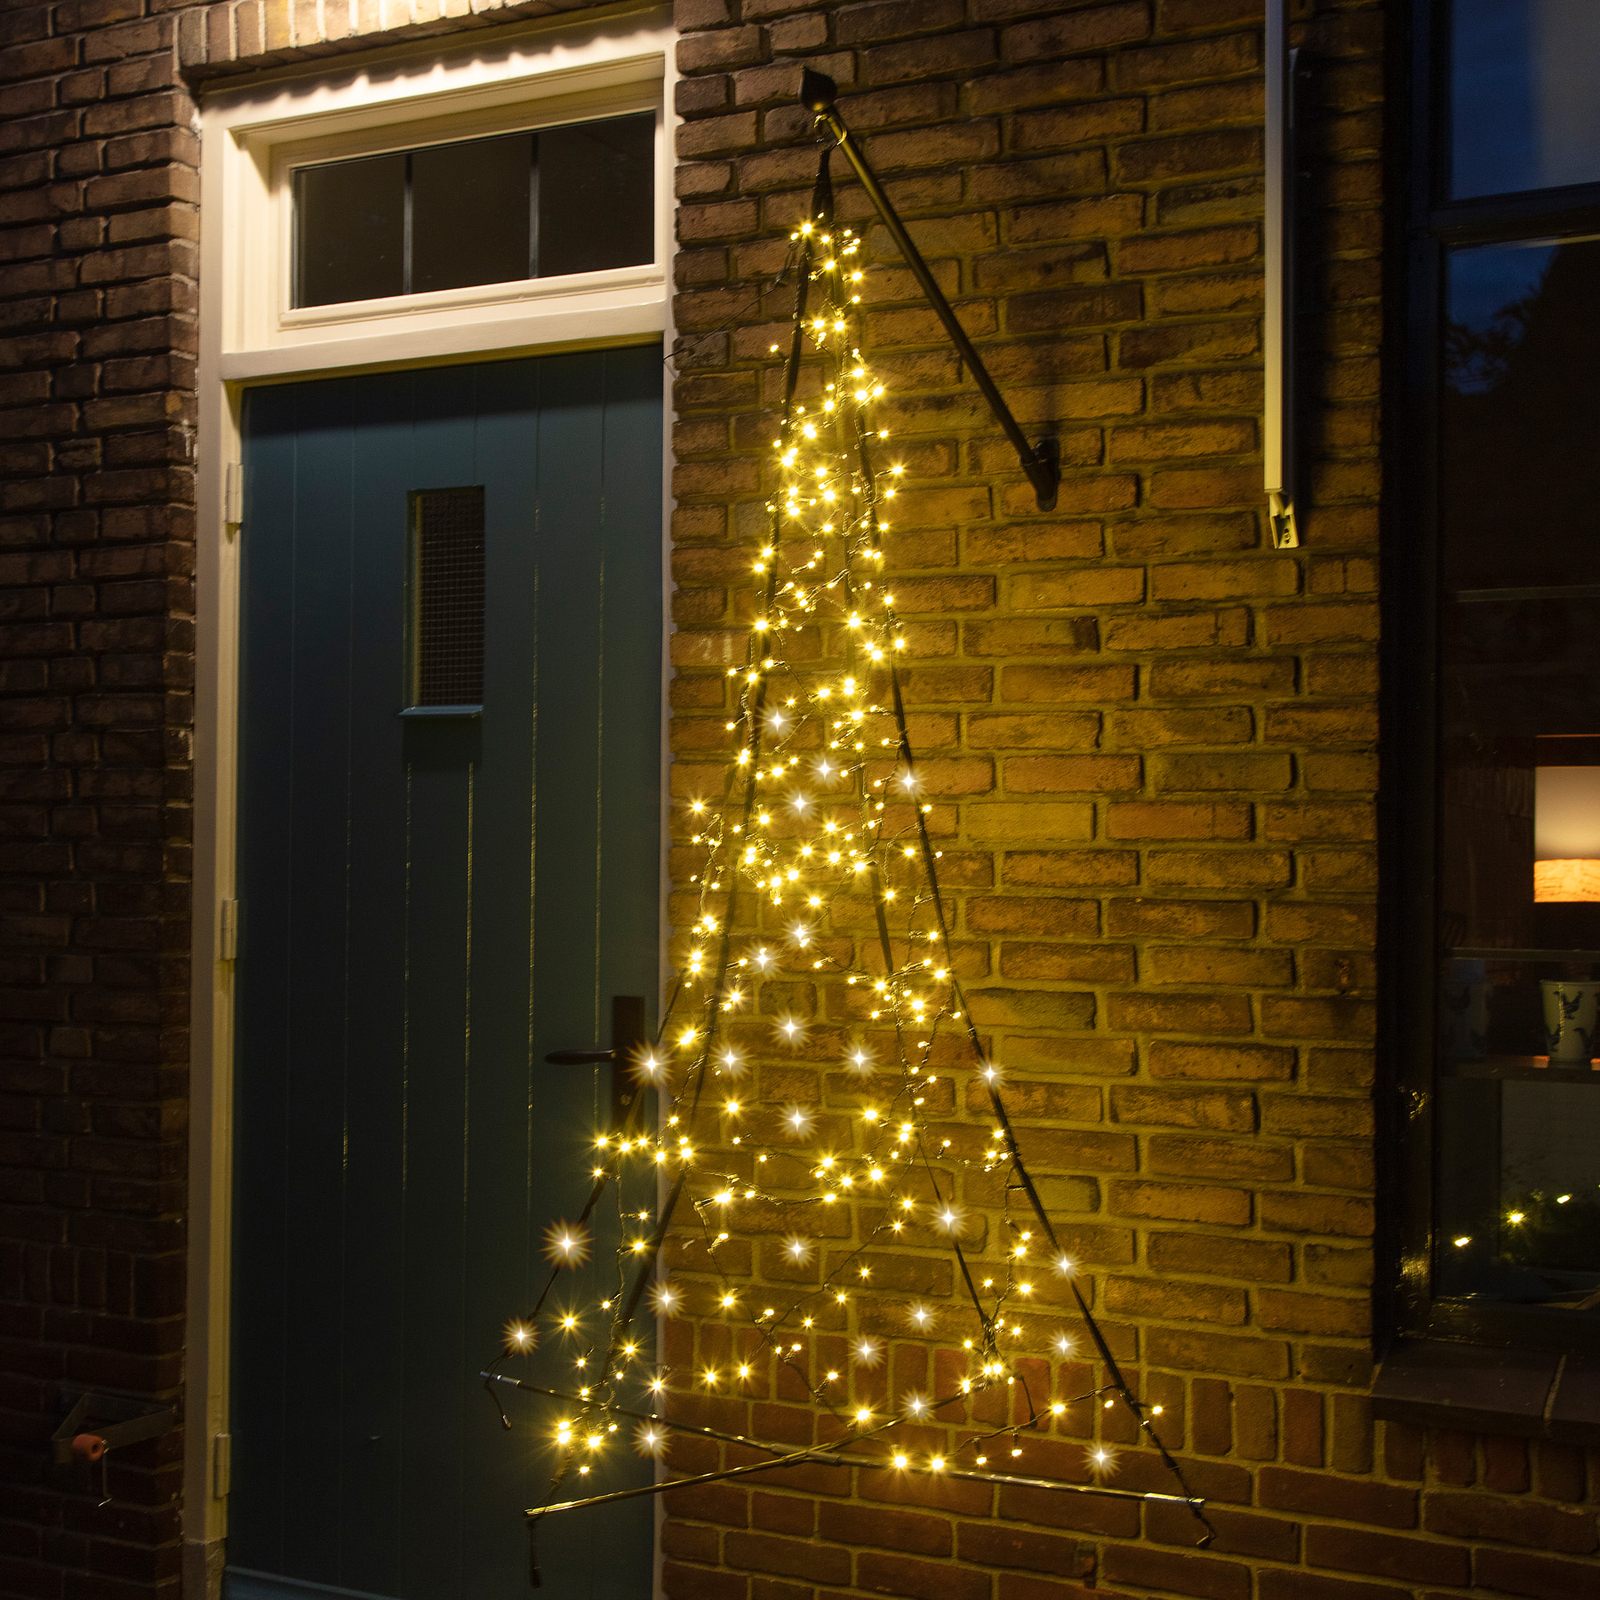 Fairybell kerstboom hangen 240 LEDs 1,5m | Lampen24.be